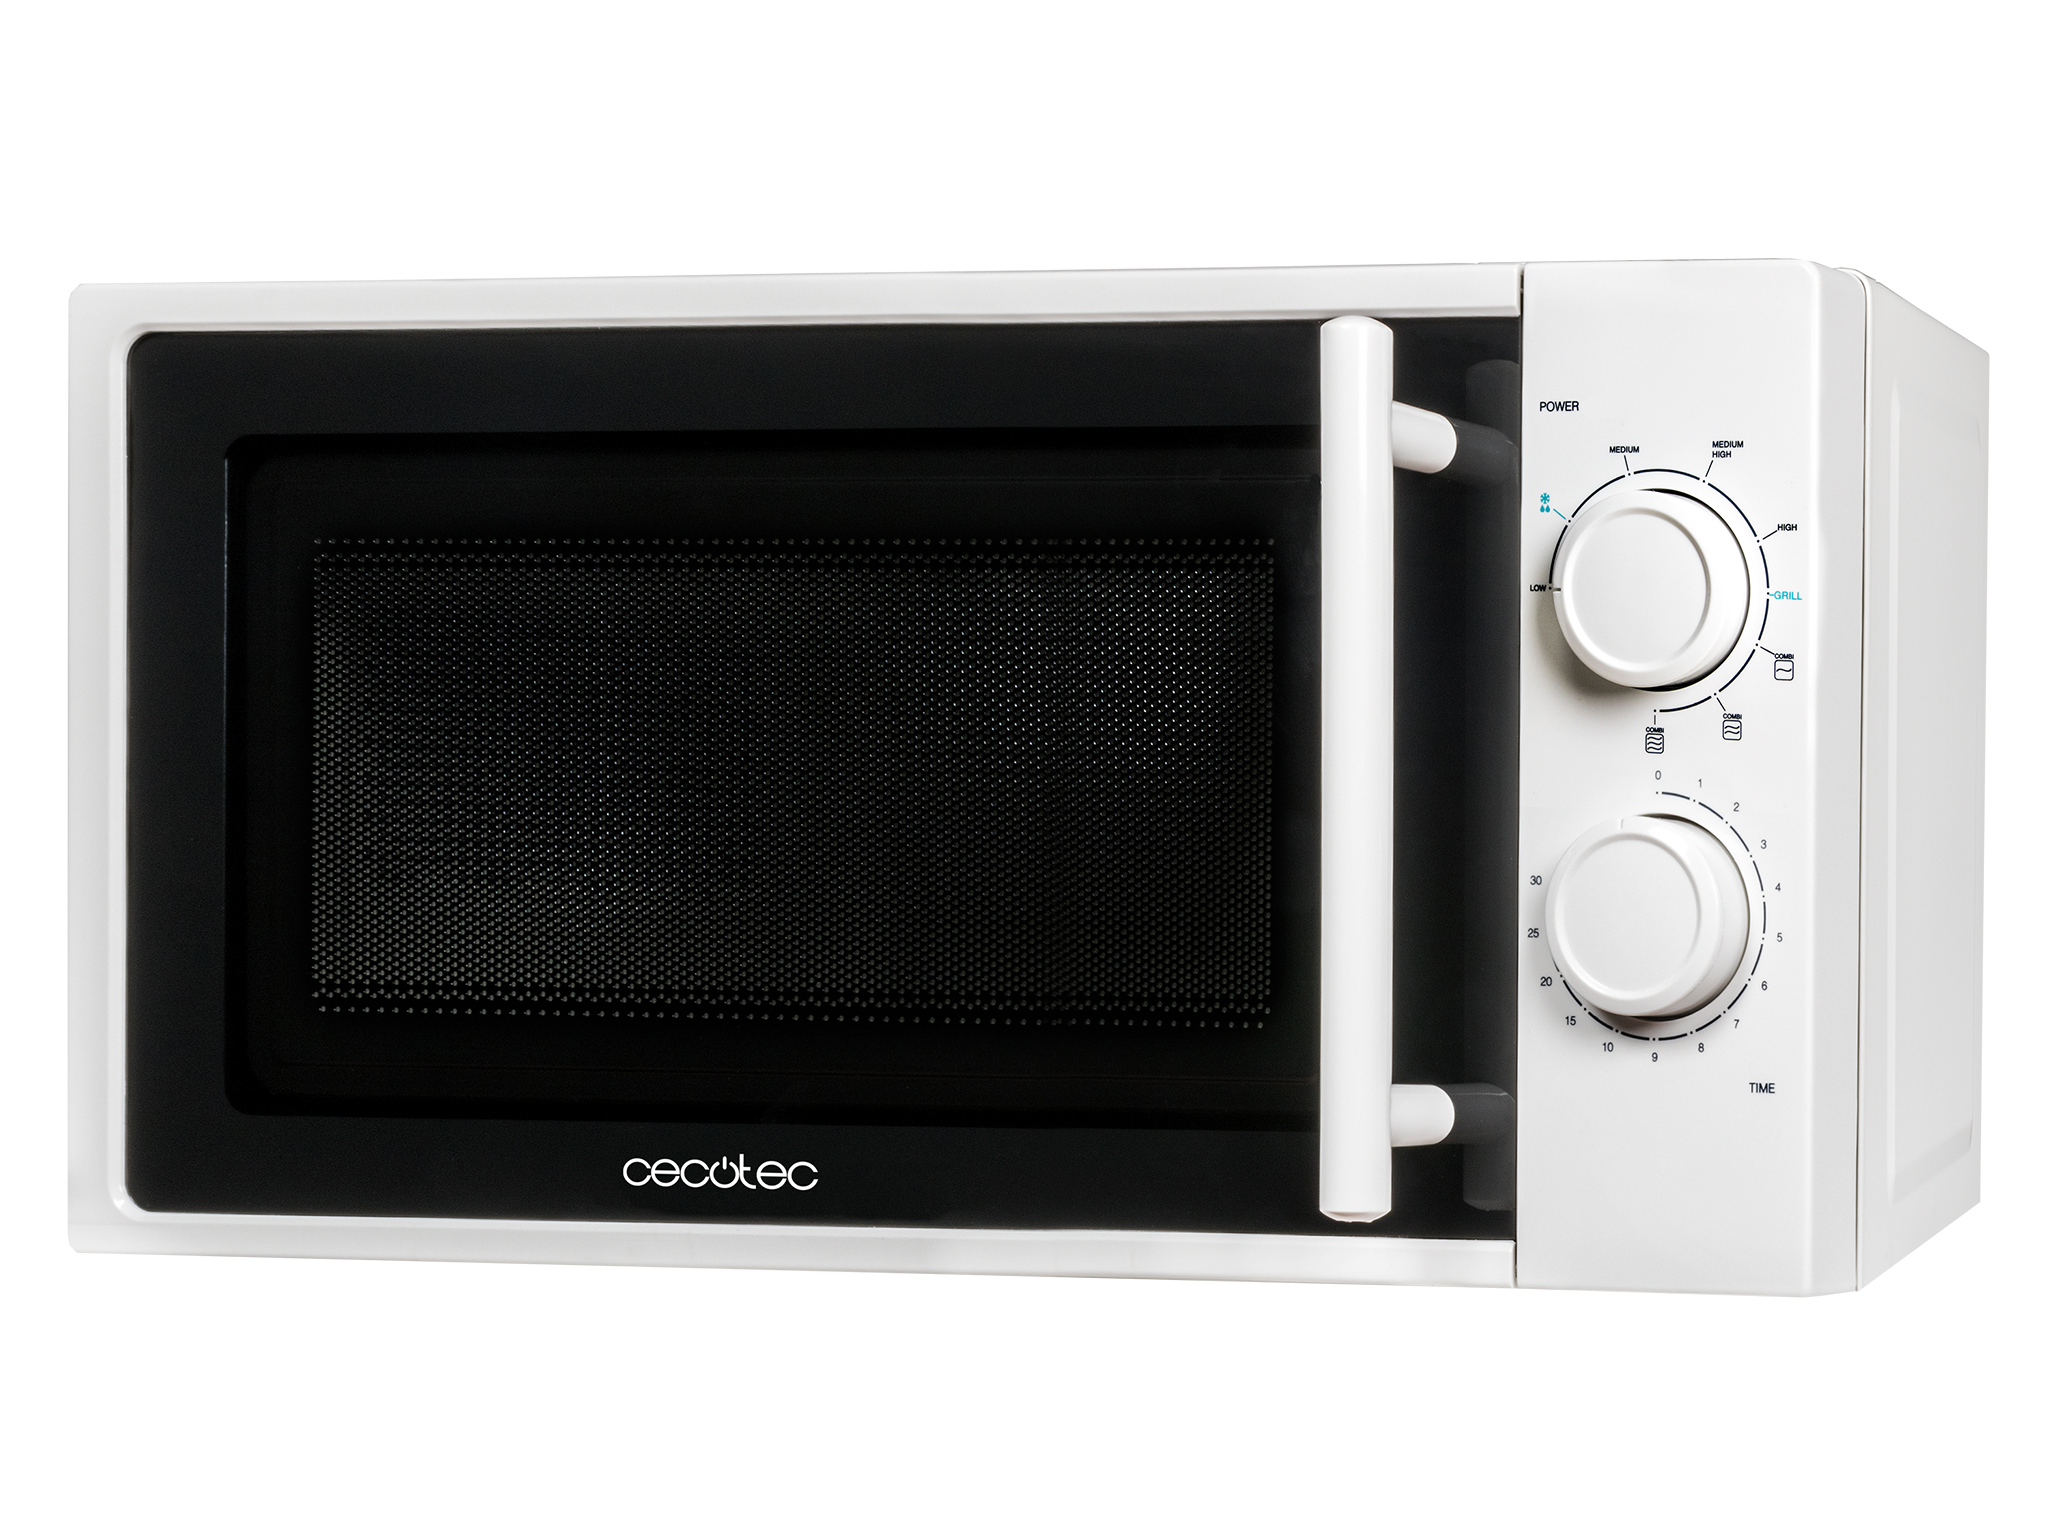 Micro-ondes avec gril White. 700 W de puissance, 20 L de capacité, gril de 900 W, 9 niveaux de fonctionnement, minuterie jusqu'à 30 minutes, mode Décongeler et finition blanche